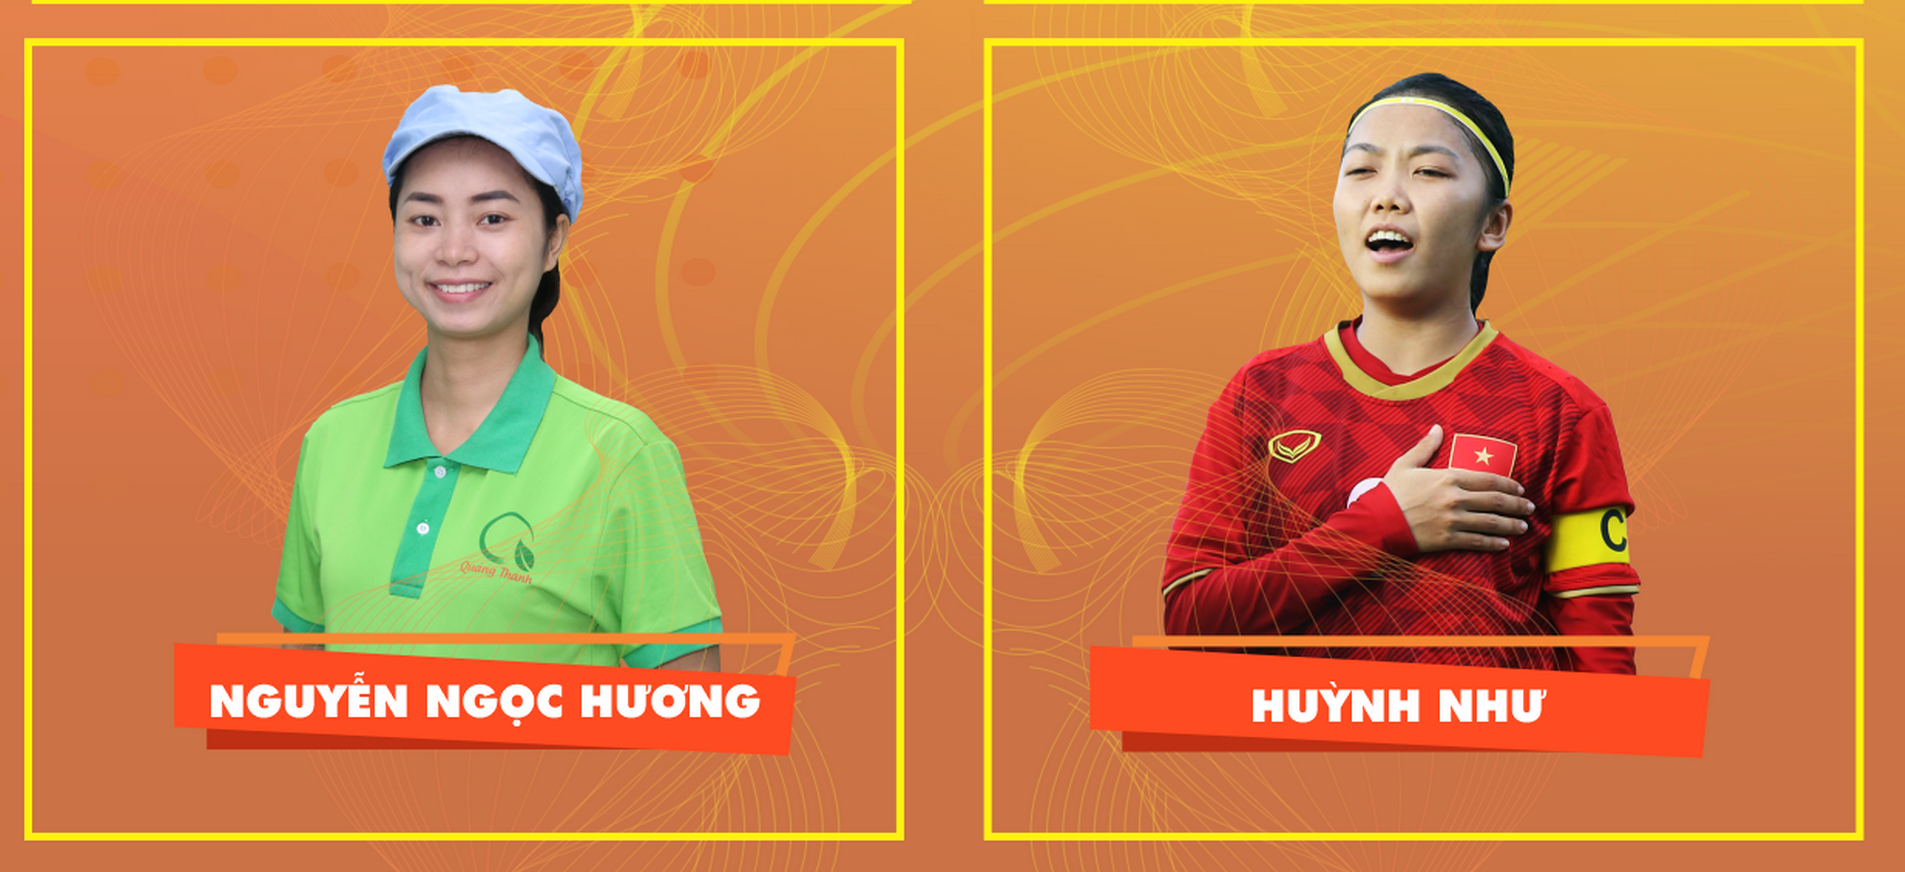 Chị Nguyễn Ngọc Hương và nữ cầu thủ Huỳnh Như